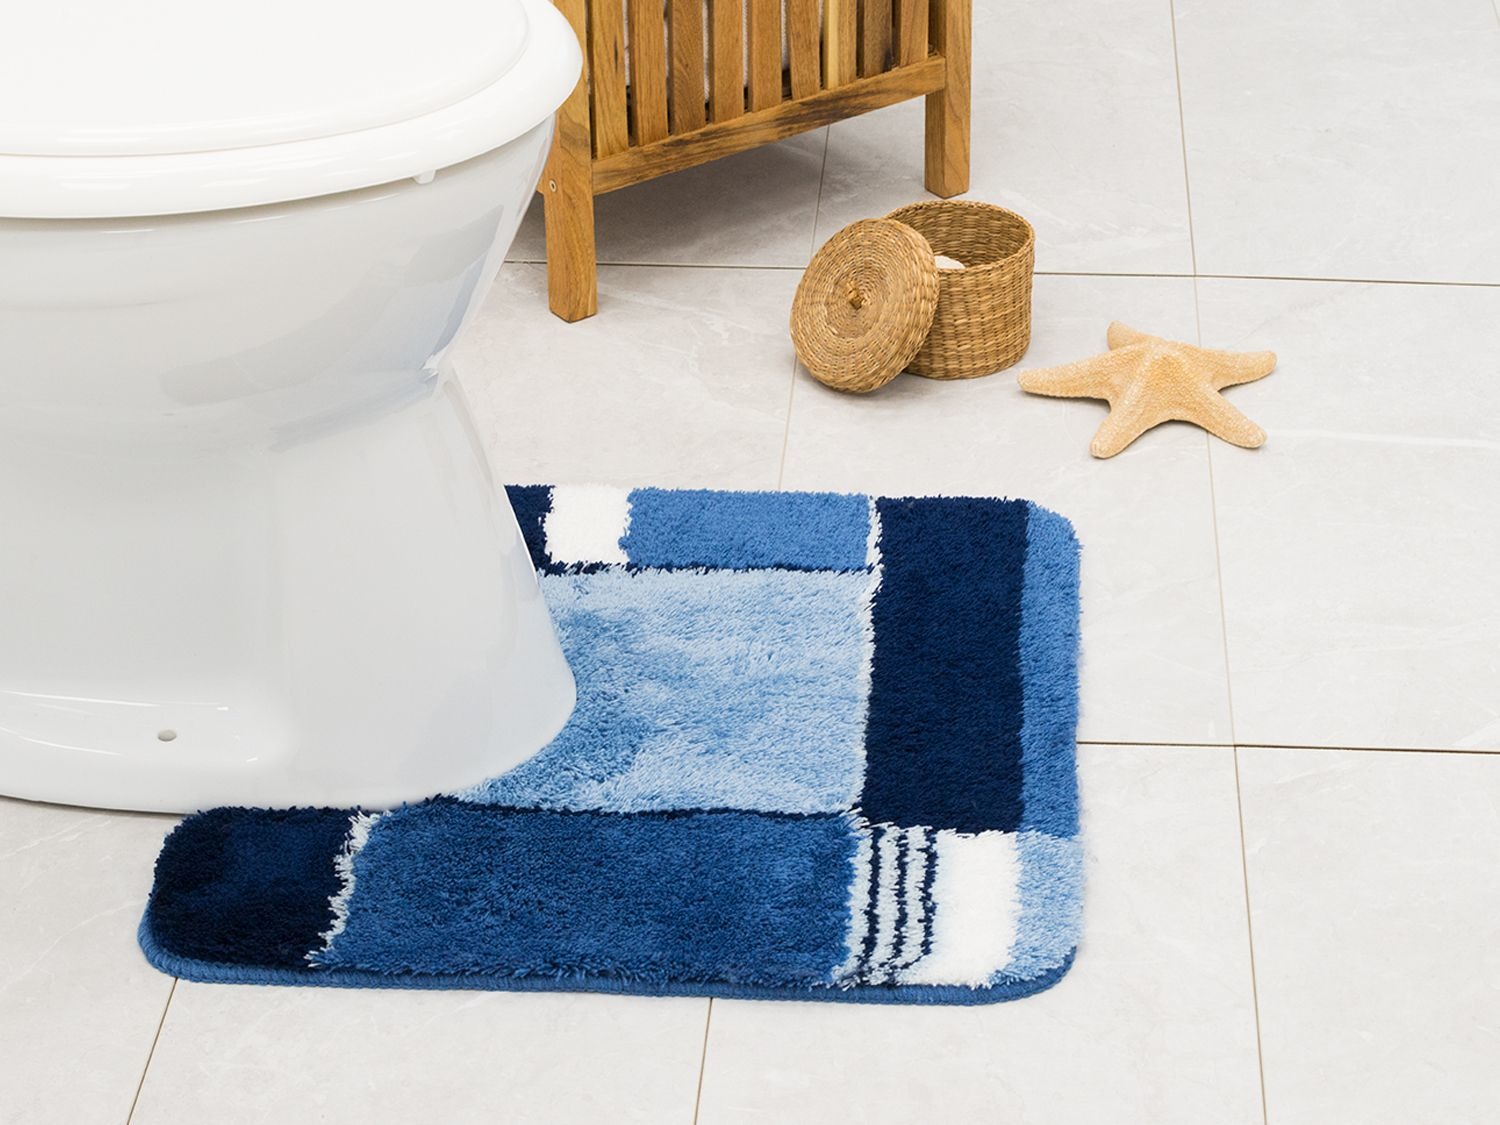 Markeer Proberen Dusver Kleine Wolke Bad- of WC-matten online kopen op Lidl.be